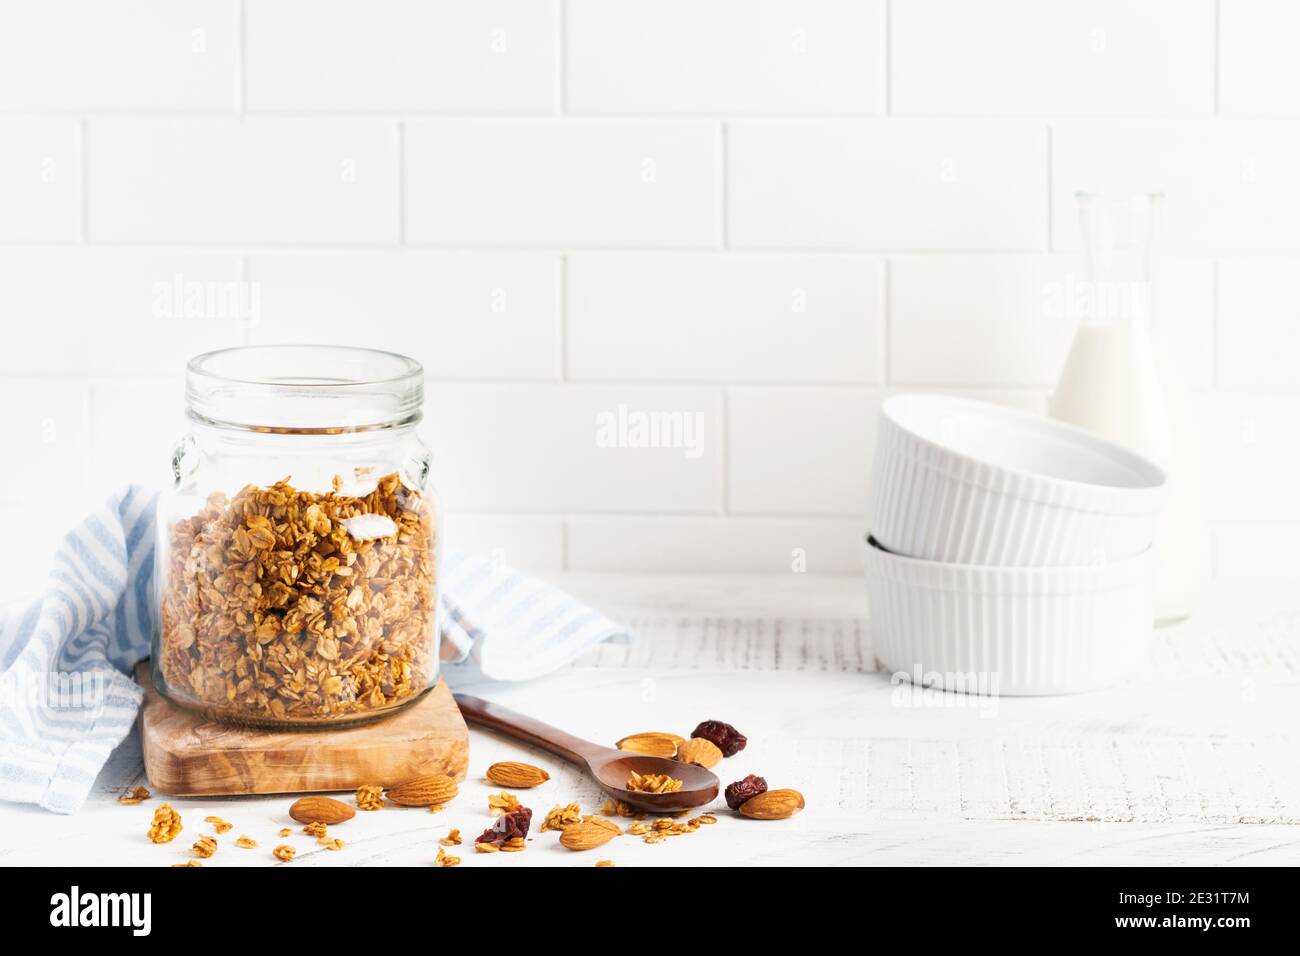 Granola d'avoine avec une bouteille de lait, de noix et de fruits secs, bols en céramique pour préparer un petit déjeuner sain sur une table lumineuse de cuisine. Merde scandinave Banque D'Images